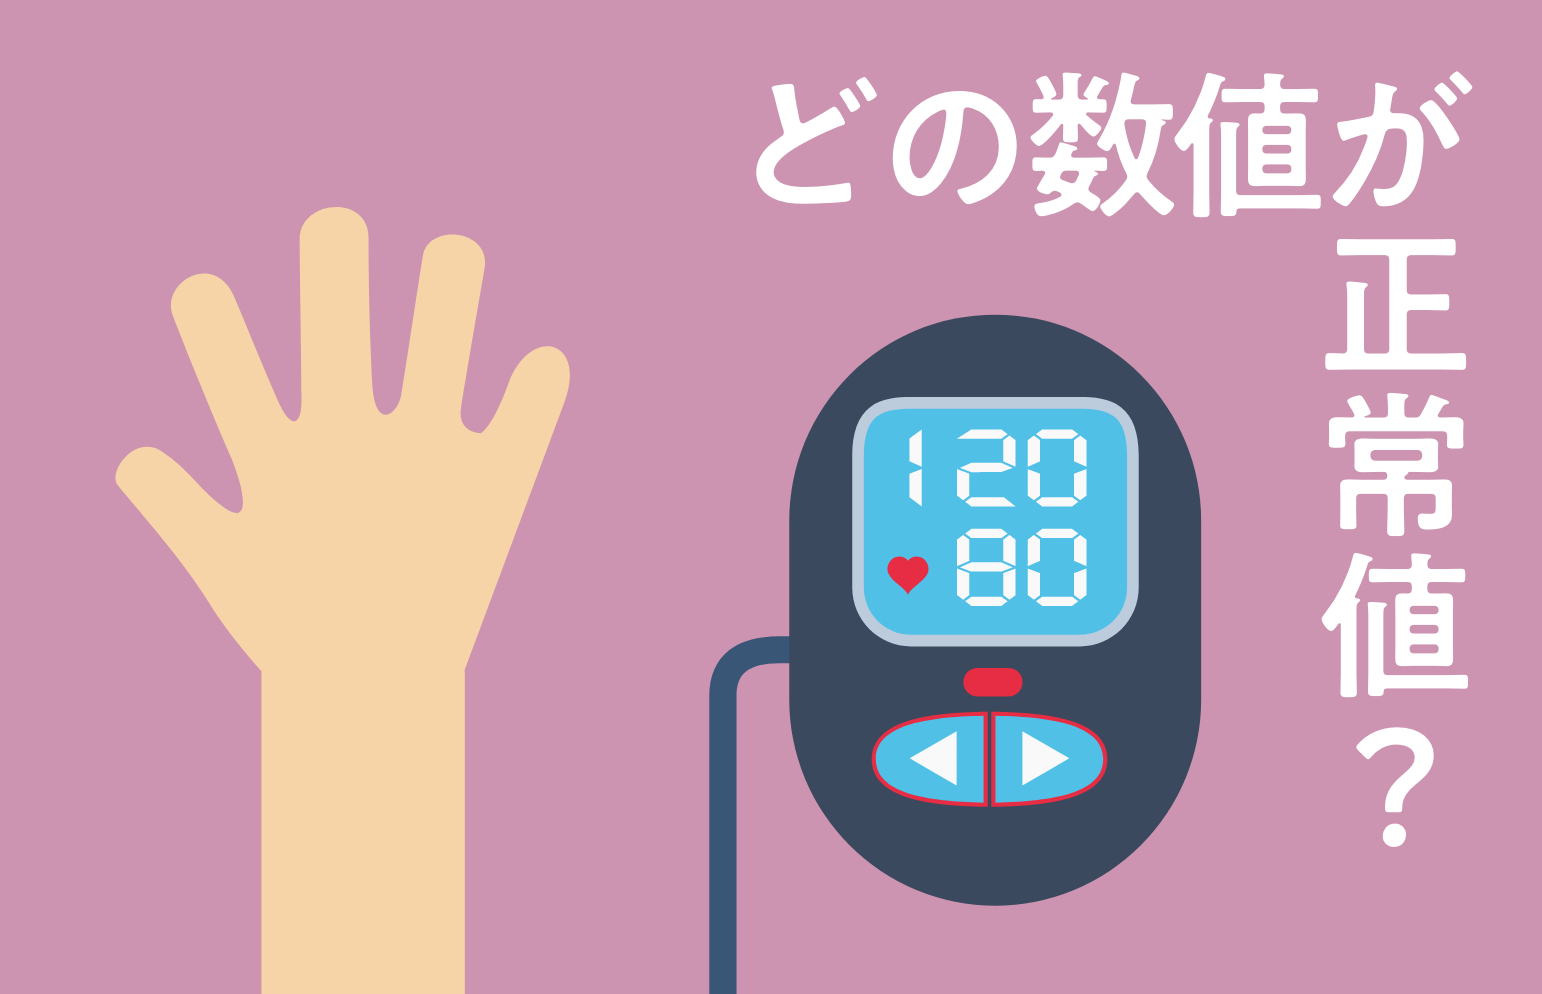 血圧の正常値とは？高血圧・低血圧の基準とリスクを知って対策しよう